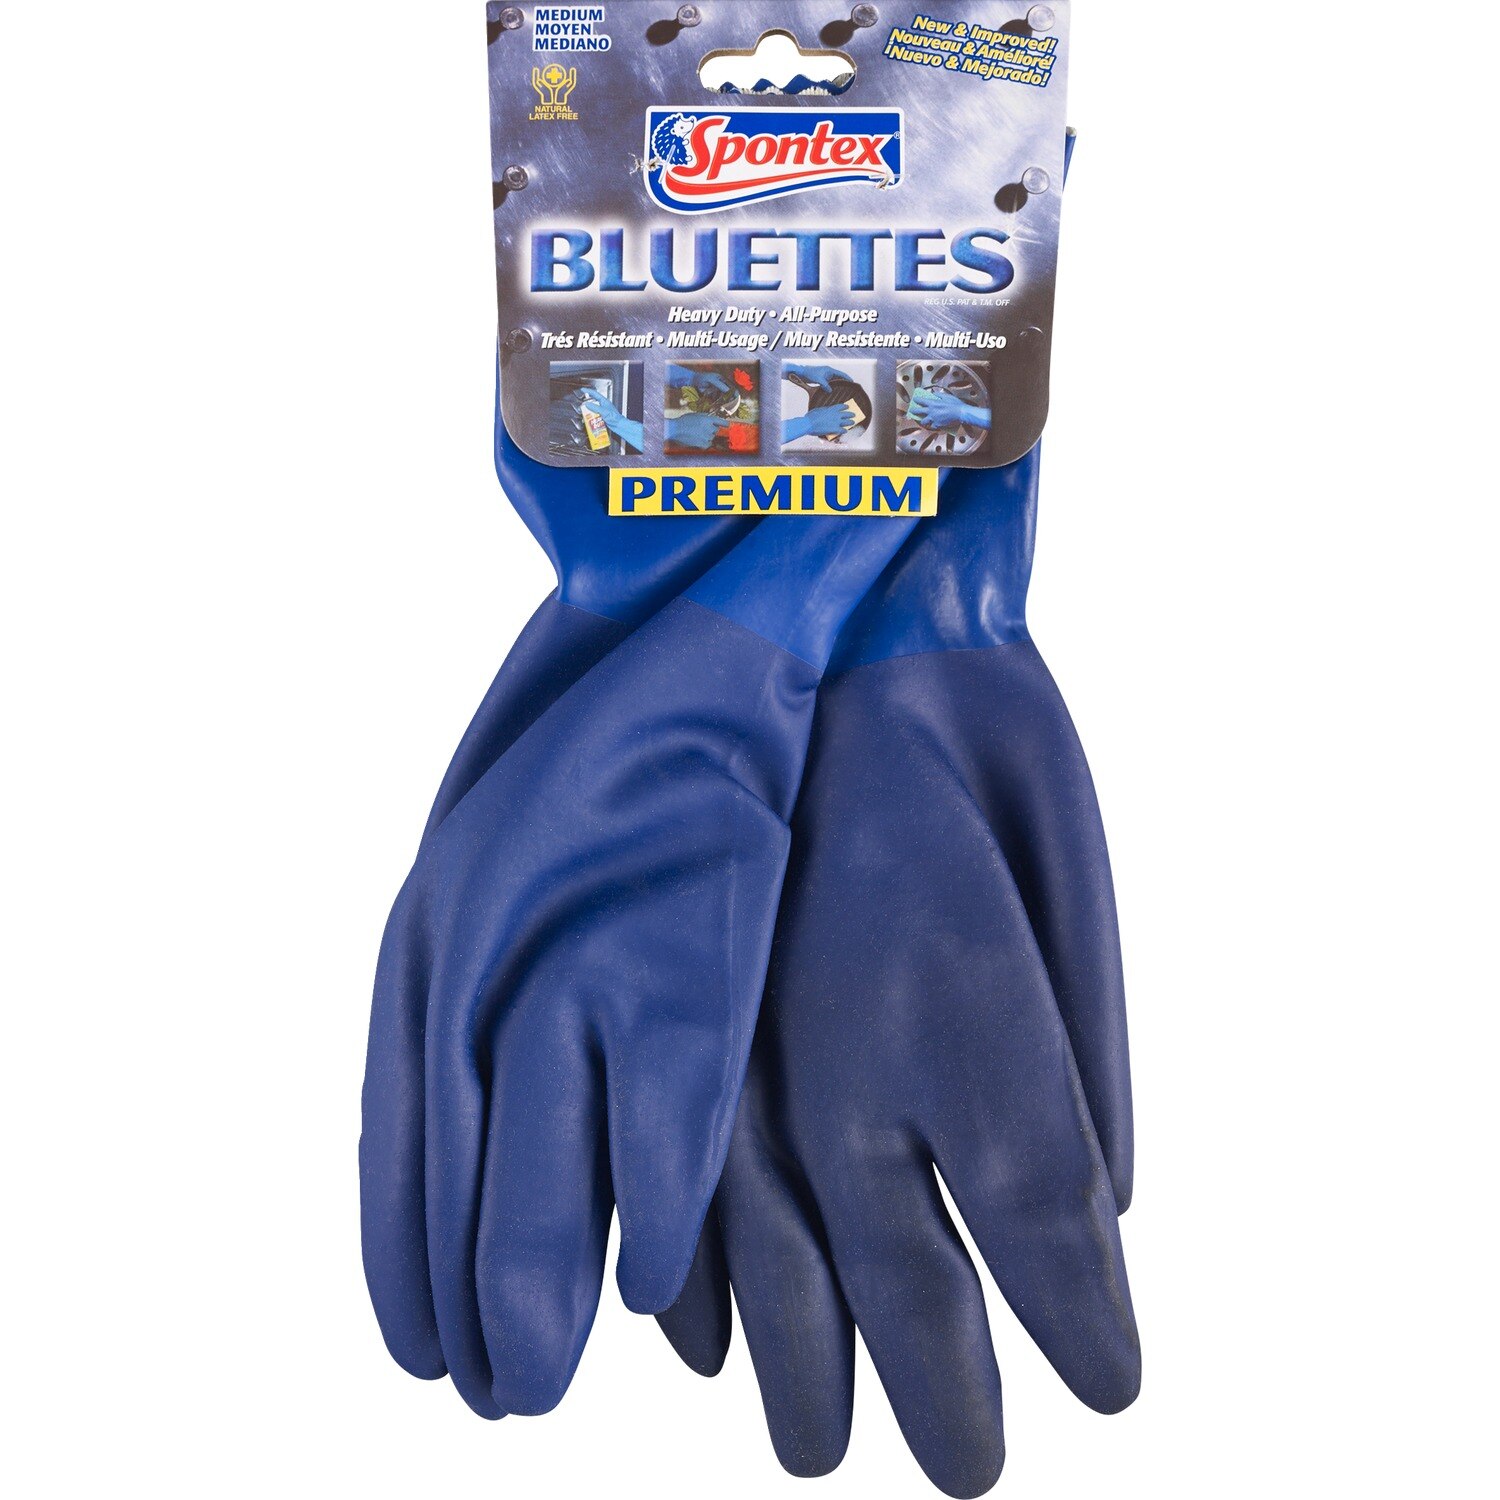 Spontex Bluettes Premium - Guantes medianos